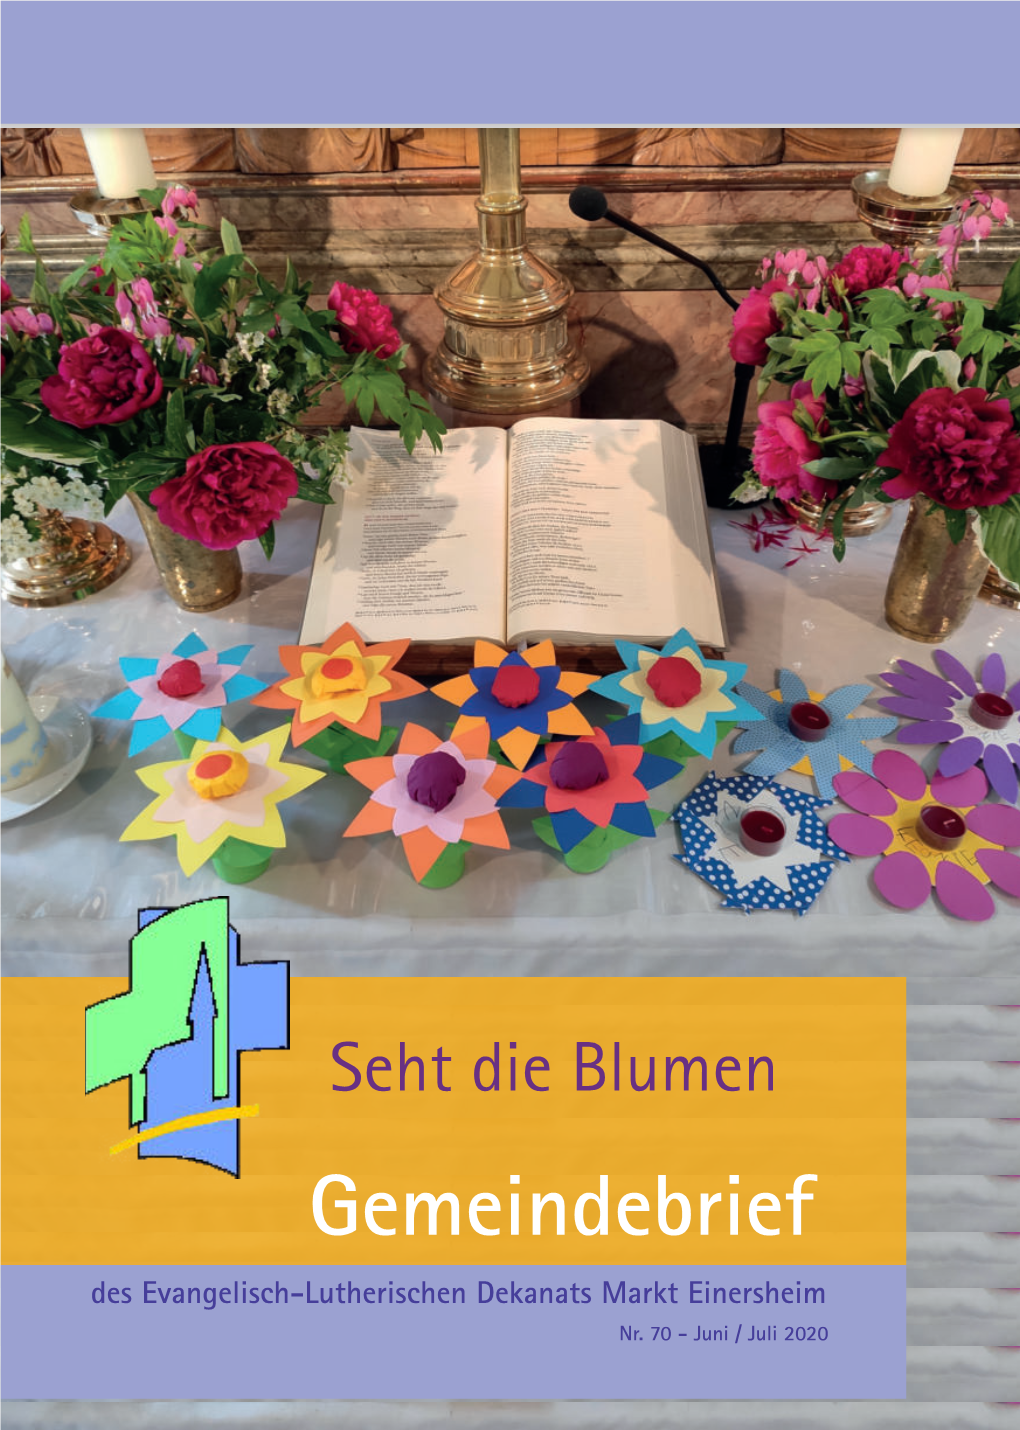 Gemeindebrief Des Evangelisch-Lutherischen Dekanats Markt Einersheim Nr